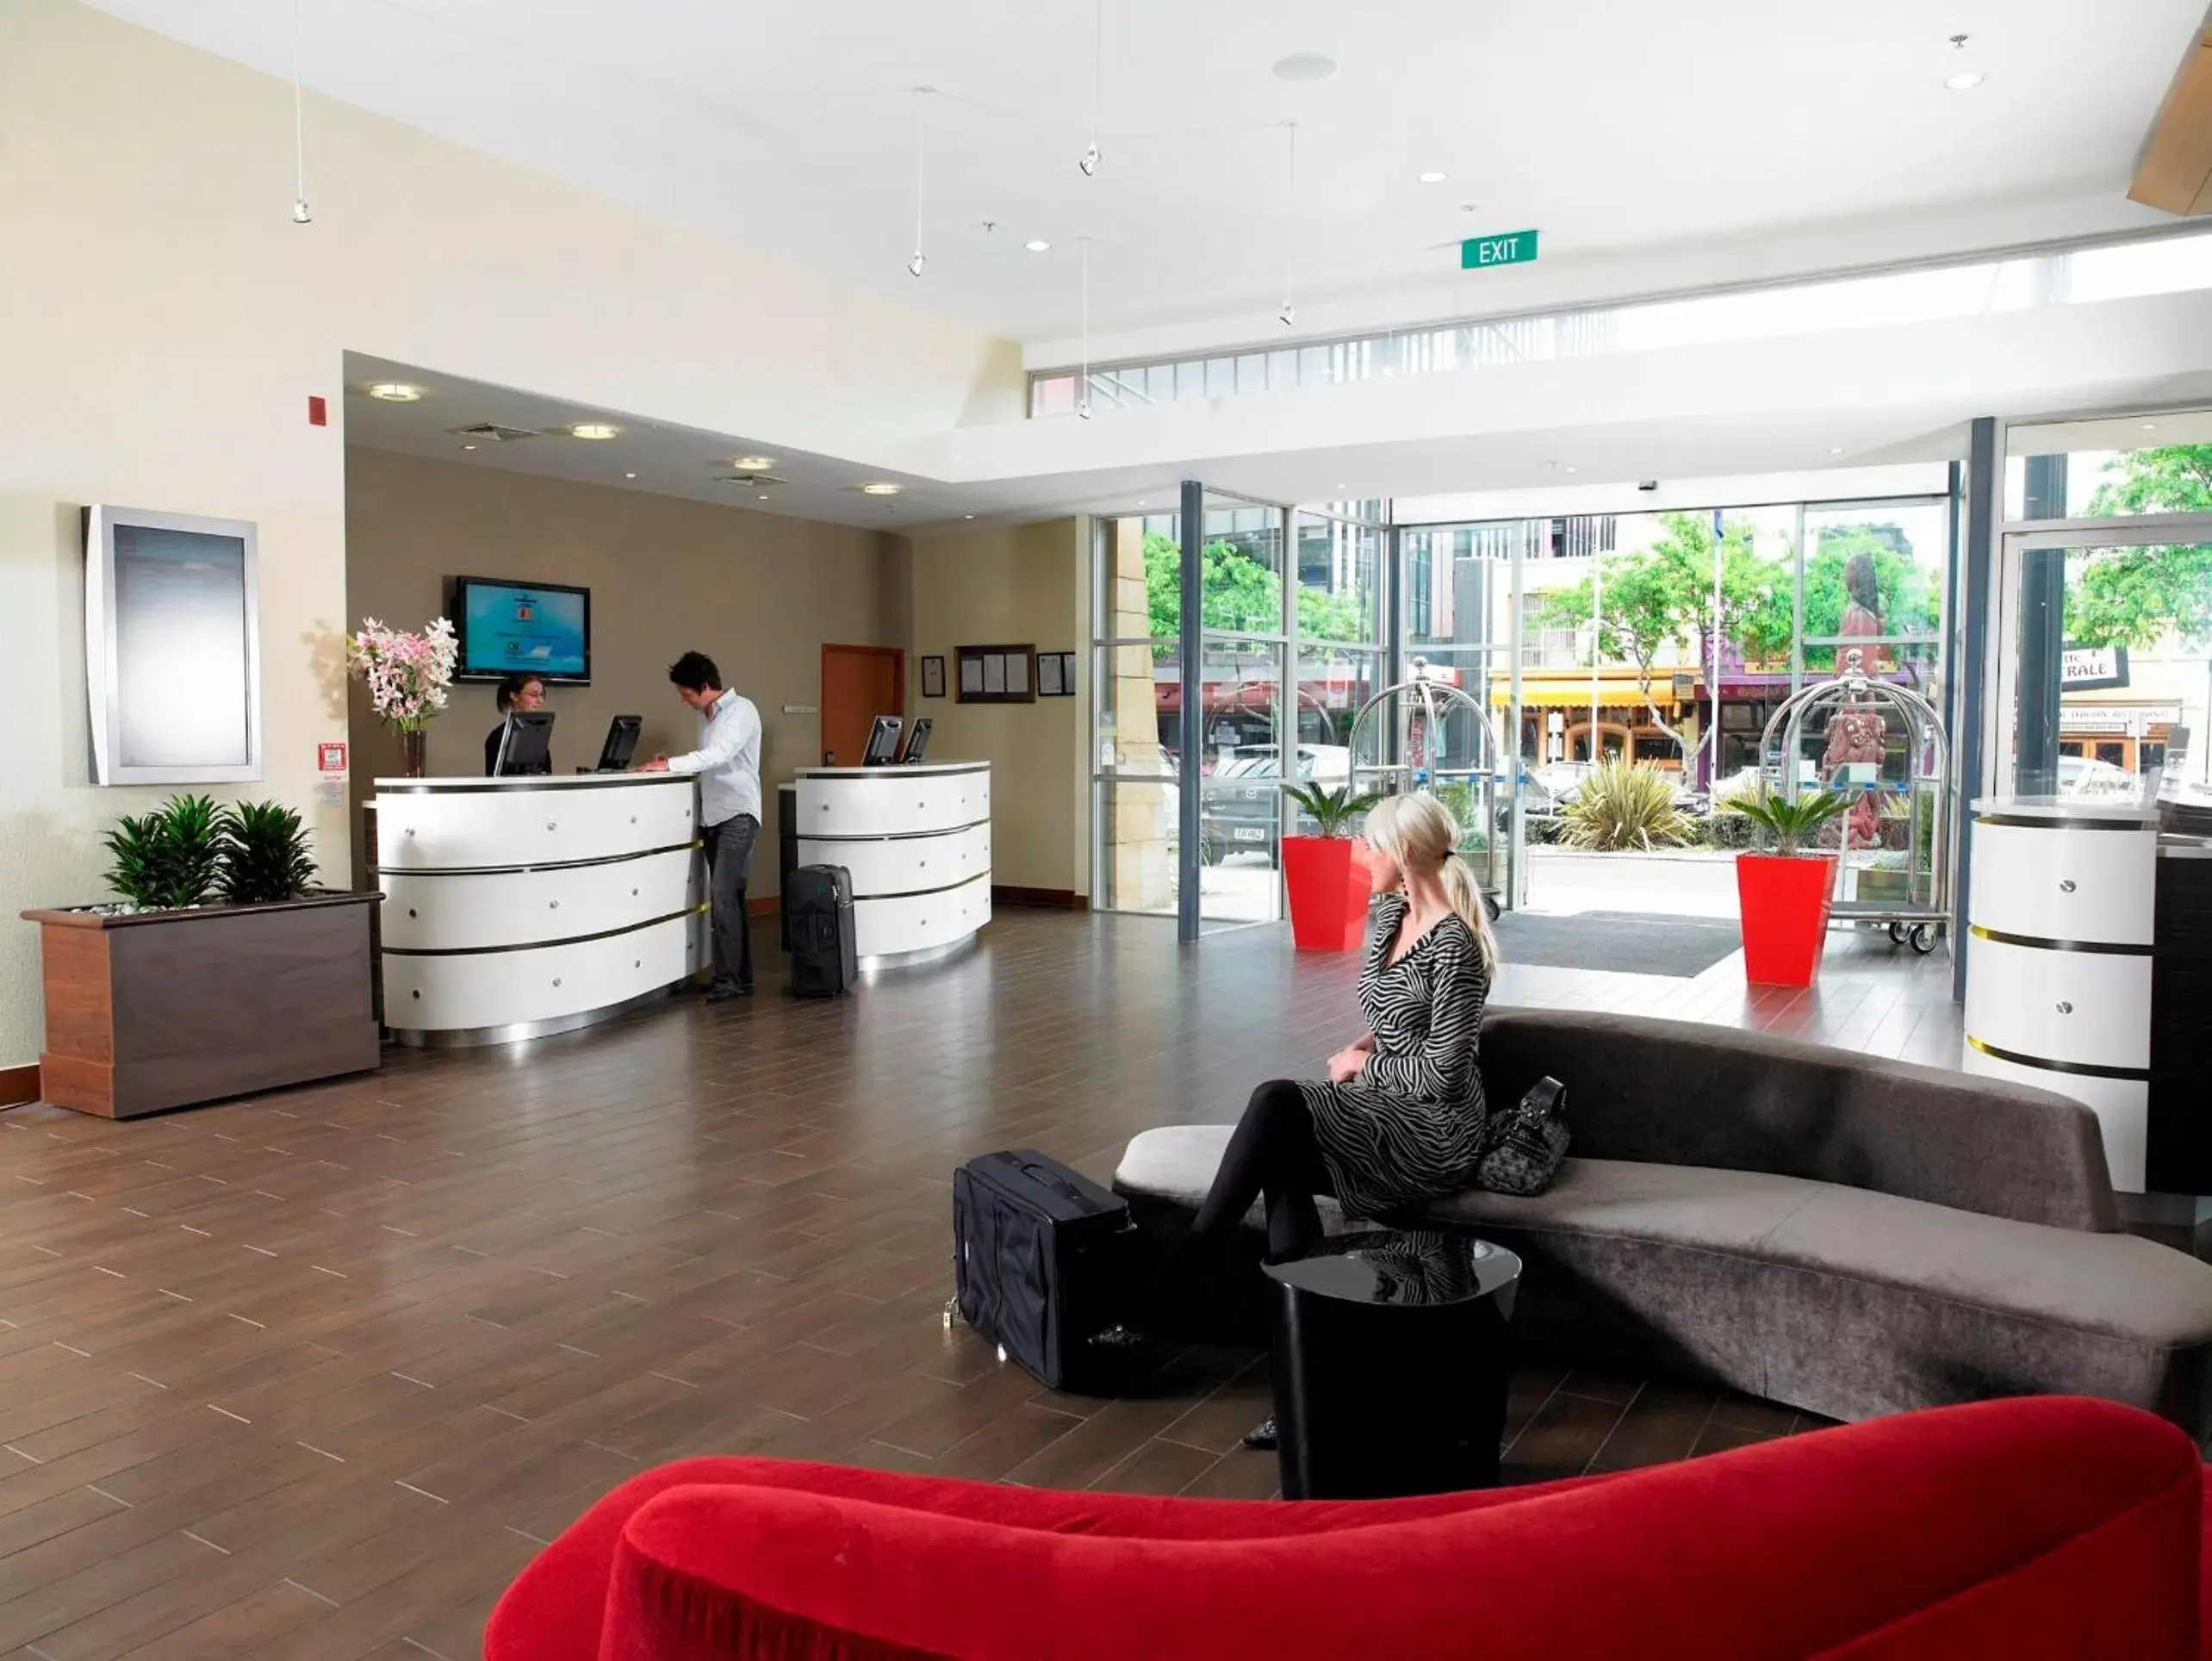 Lobby or reception, Lobby/Reception in Novotel Tainui Hamilton